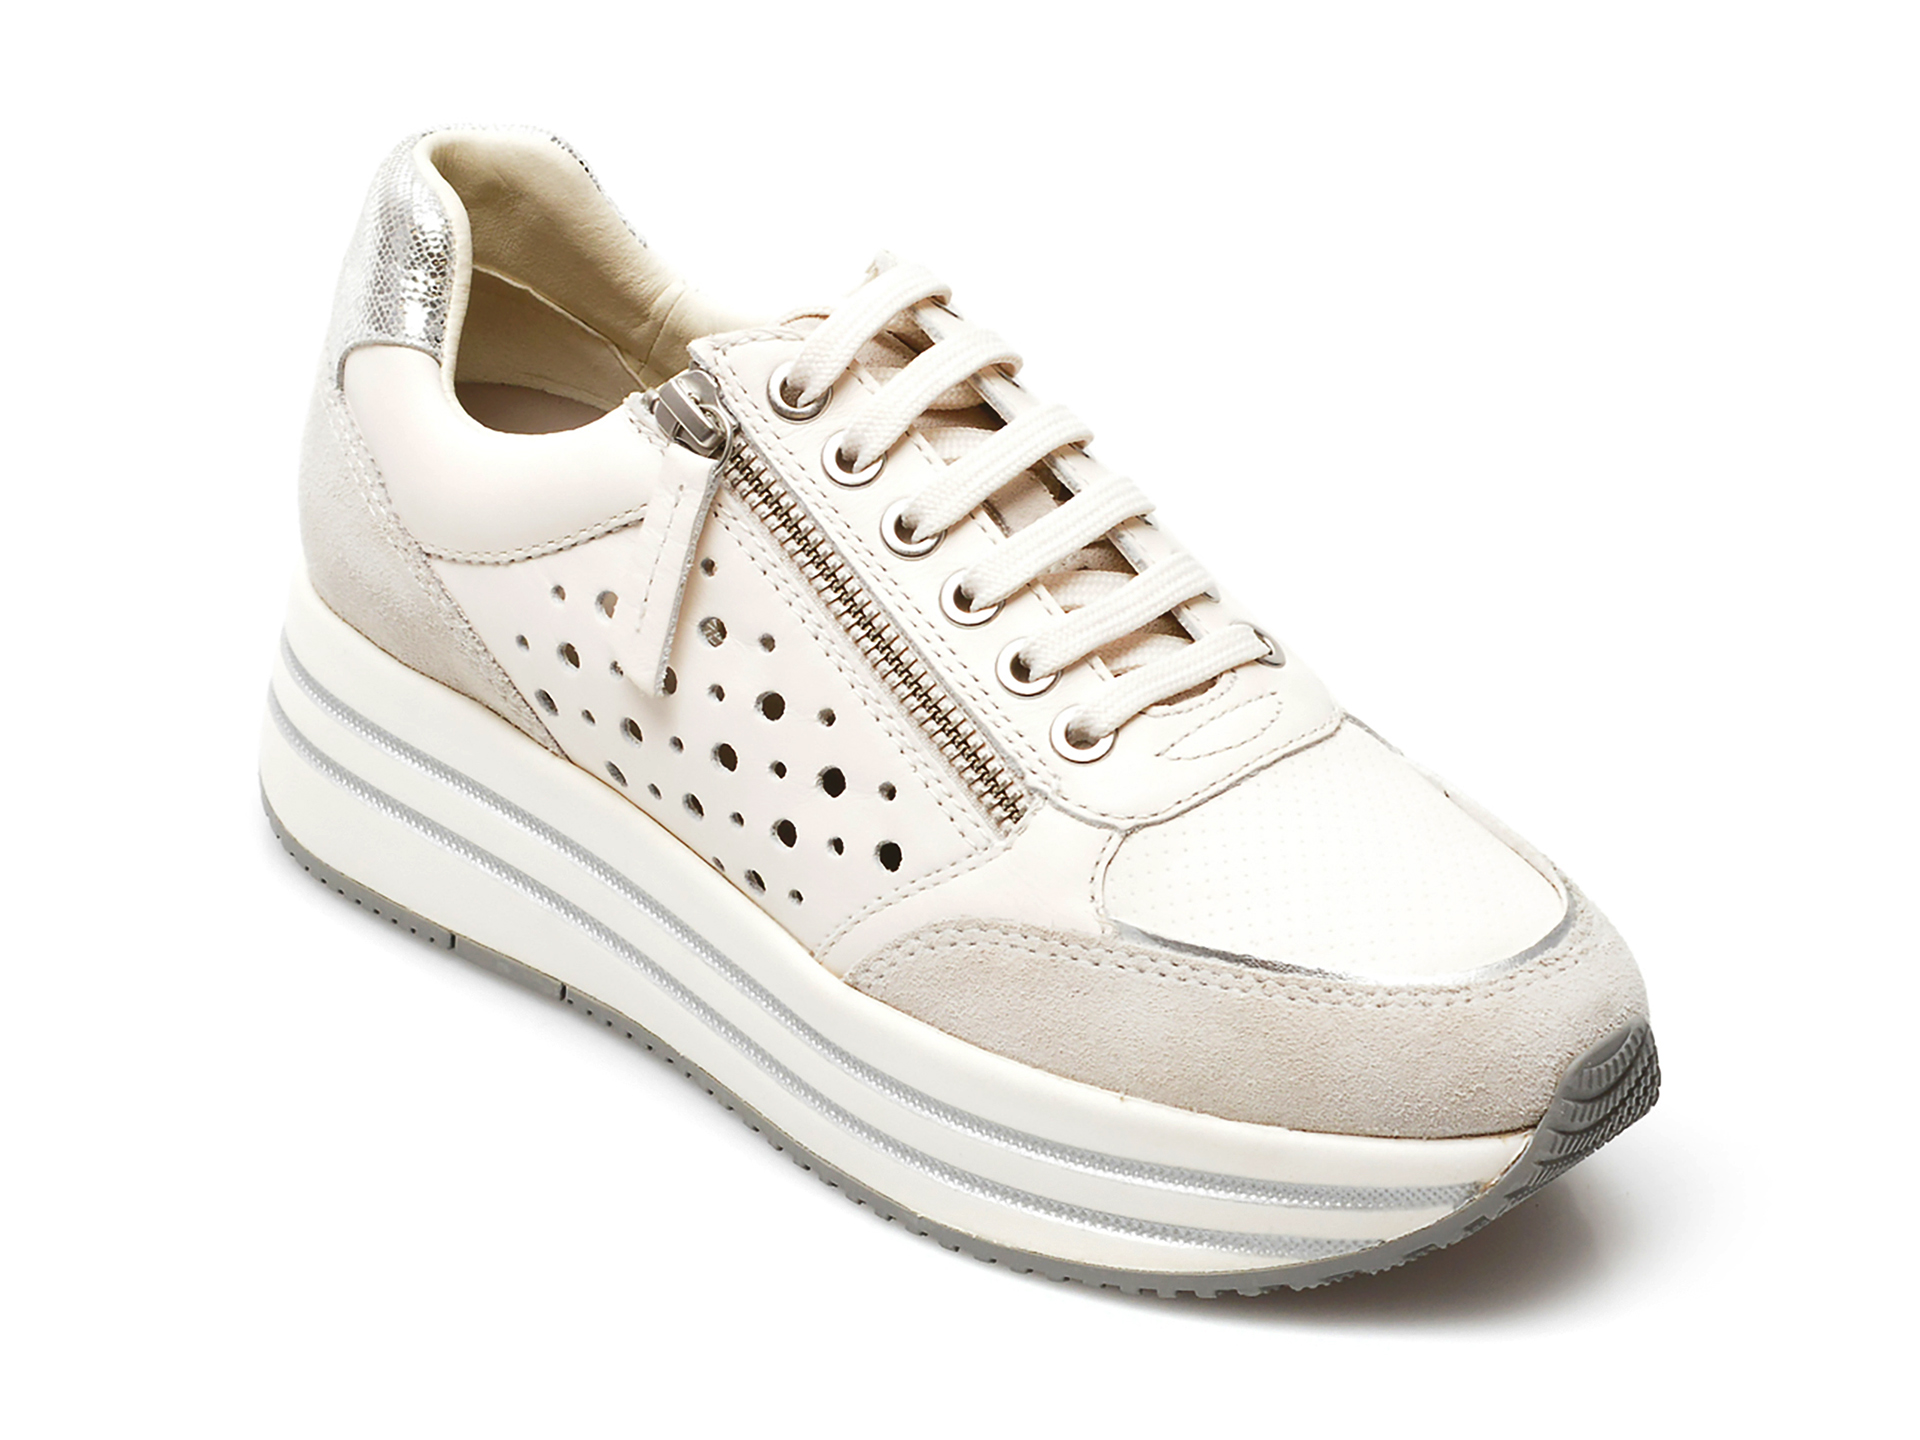 Pantofi sport GEOX albi, D25QHB, din piele naturala Geox Geox